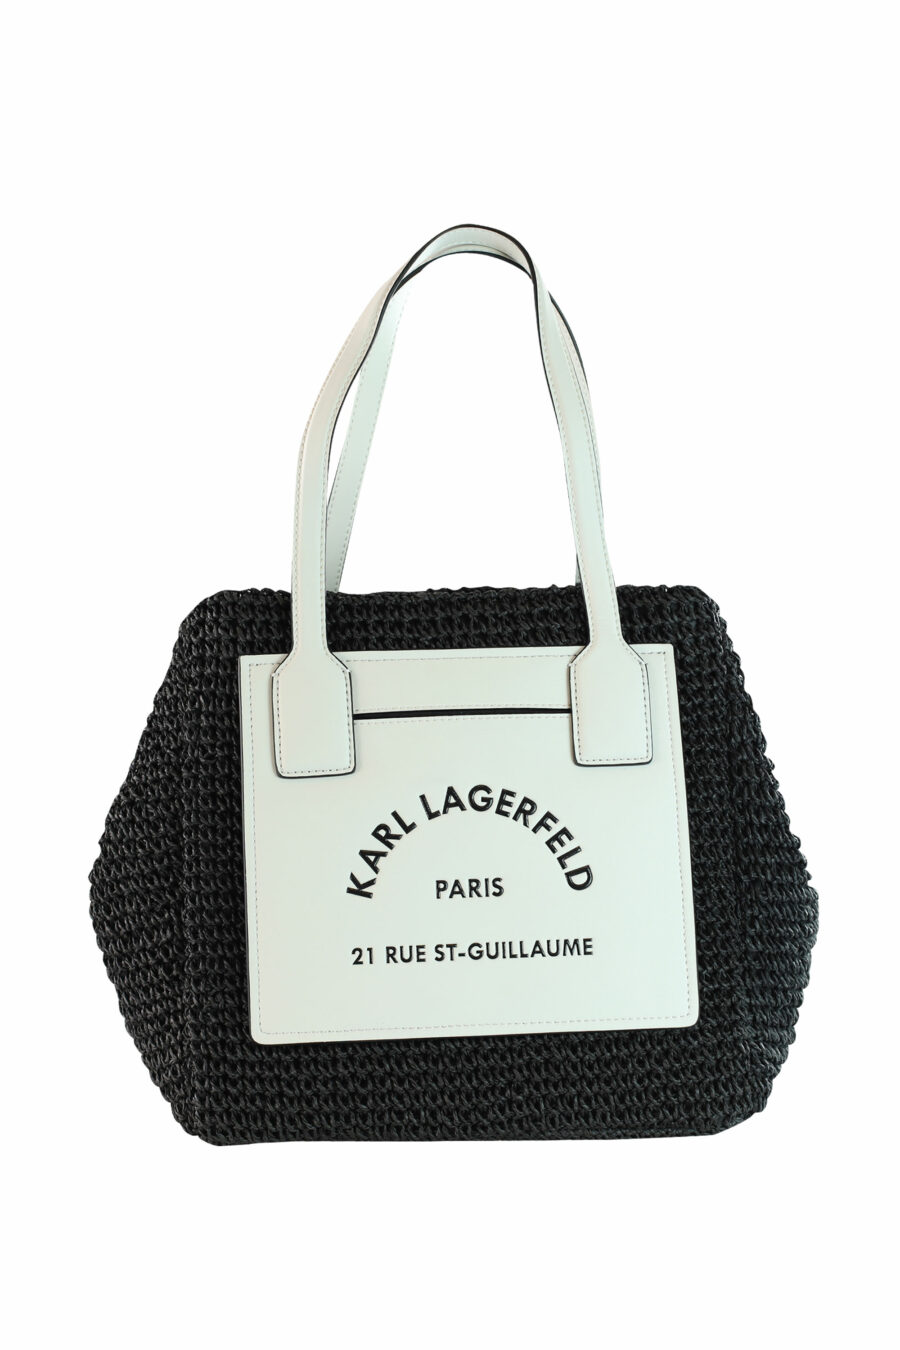 Schwarze Korbtasche mit weißem und "rue st guillaume"-Logo - 8720744102922